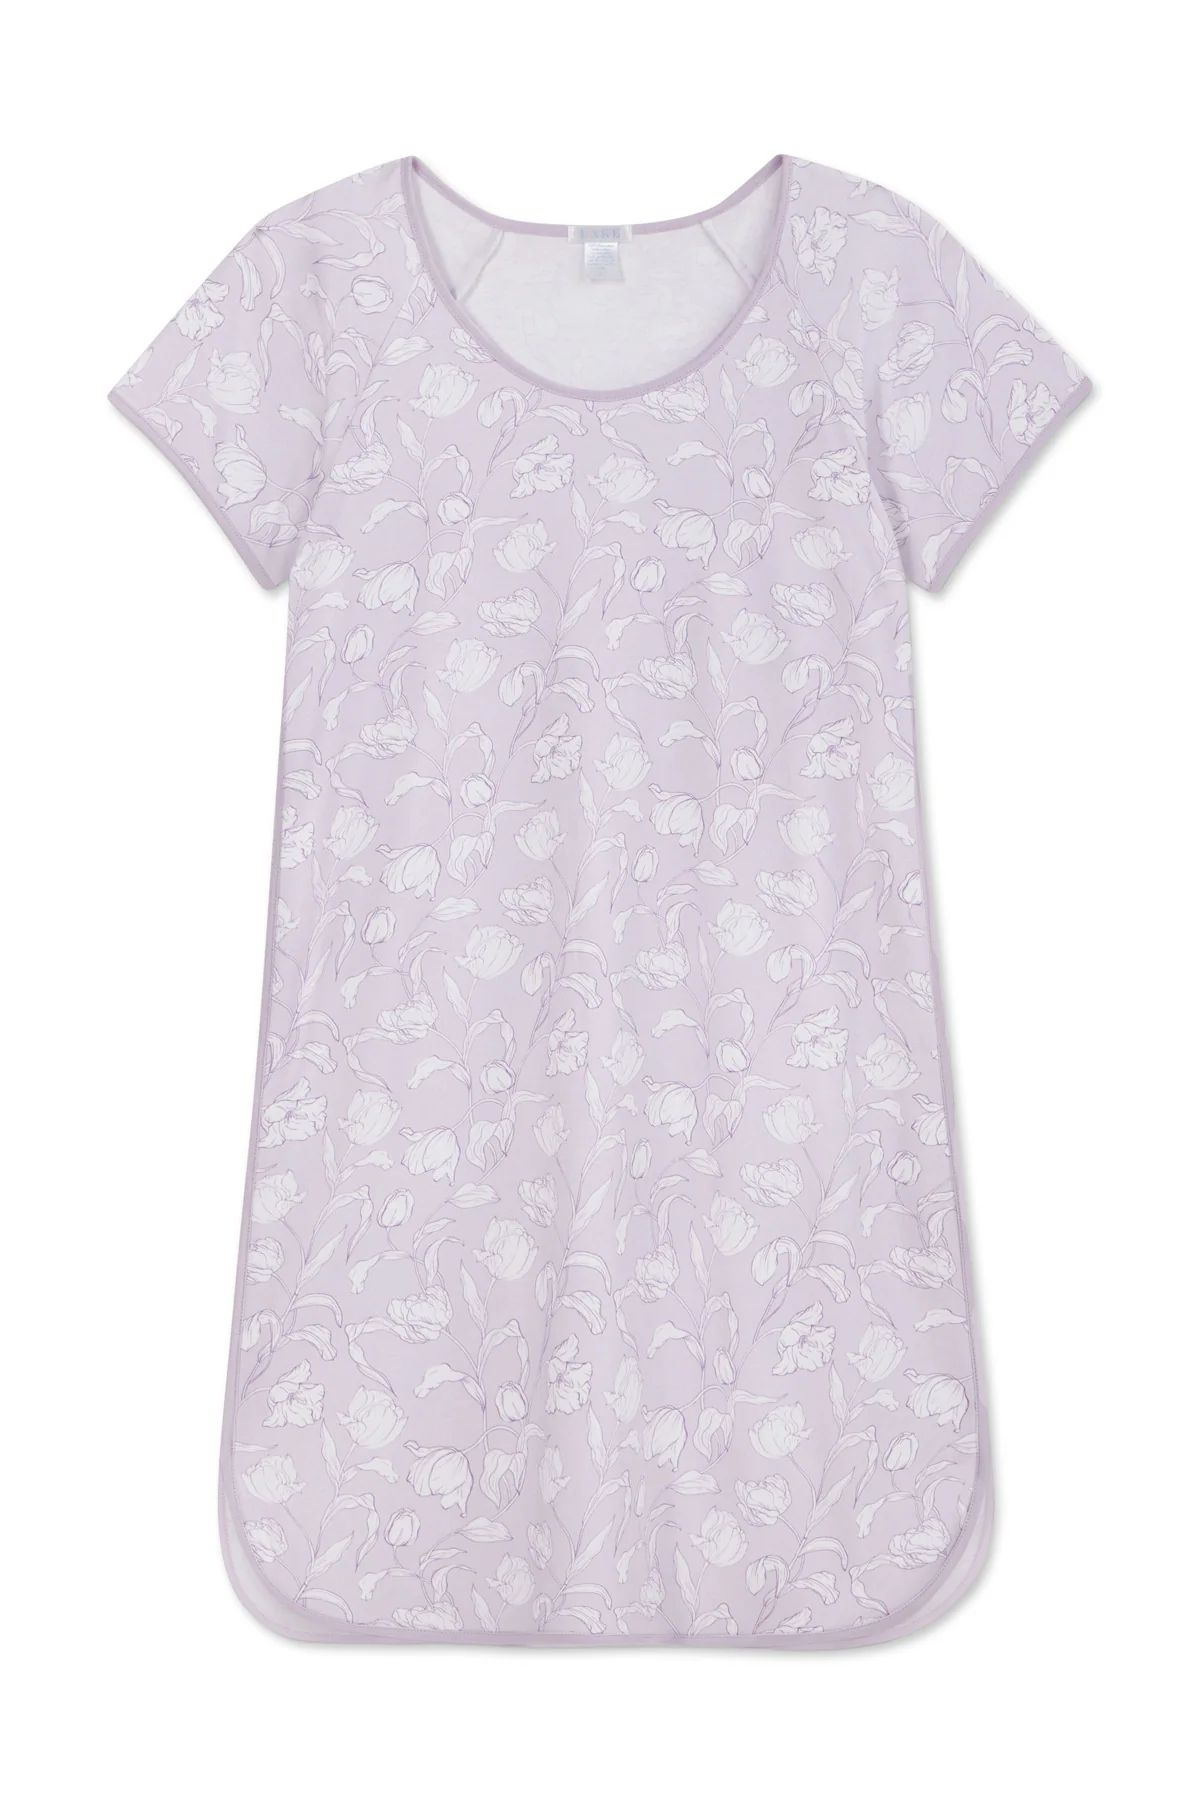 Pima Nightgown in Wildflower Vine Floral | Lake Pajamas